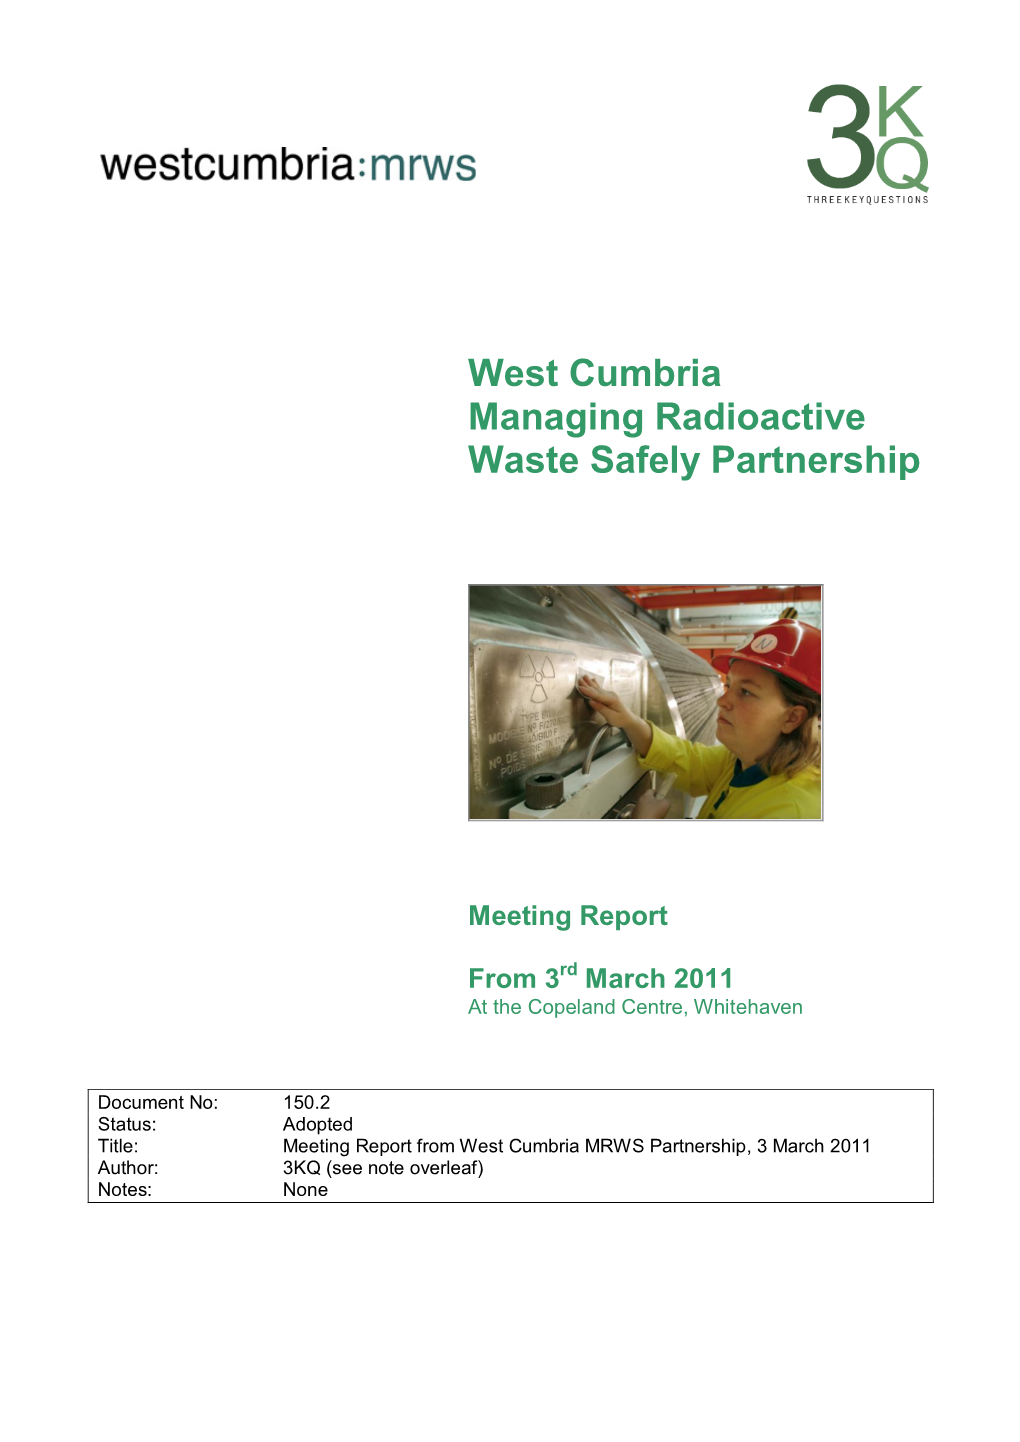 West Cumbria Managing Radioactive Waste Safely Partnership